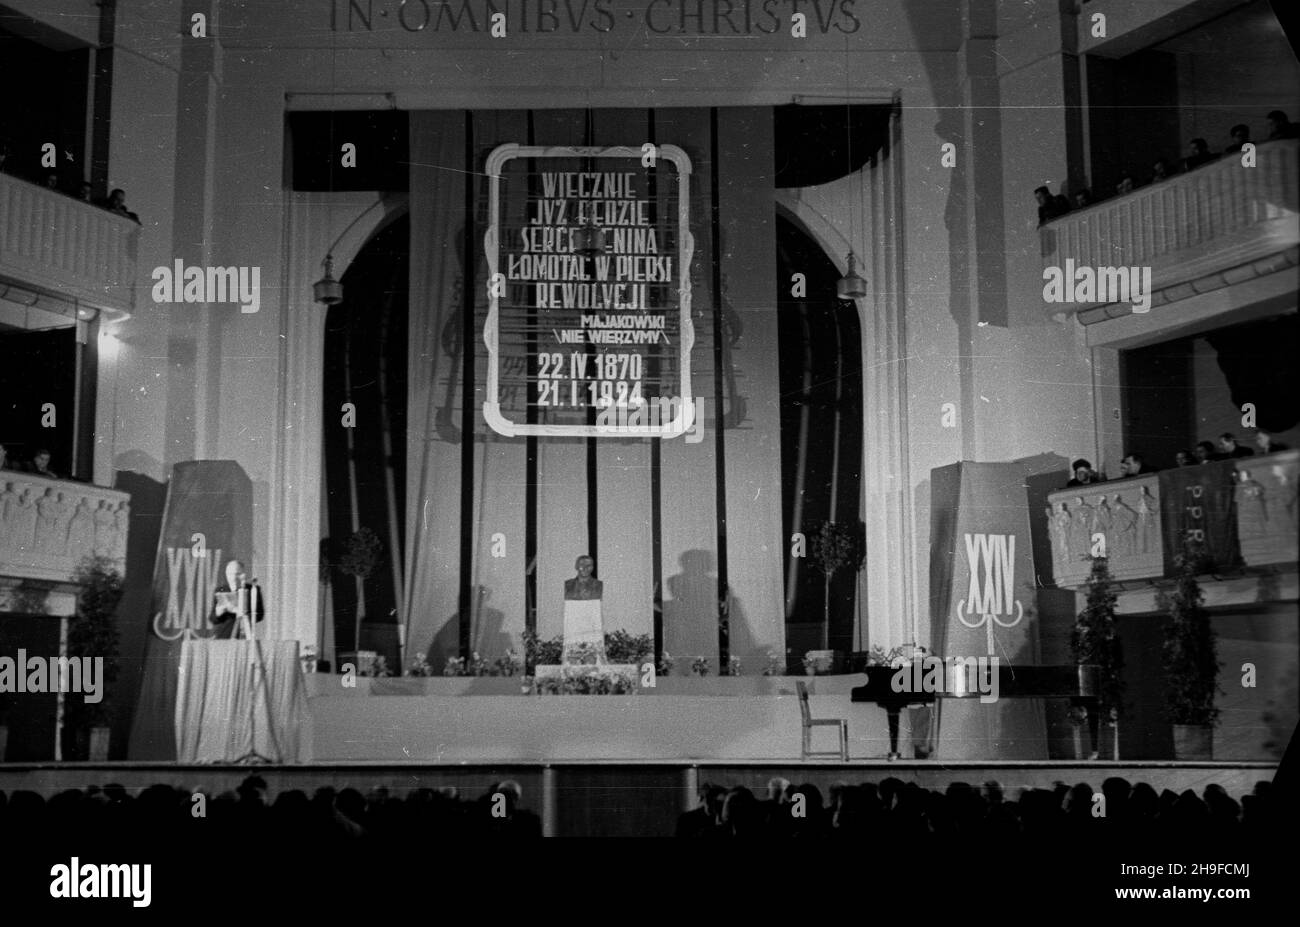 Warszawa, 1948-01-21. 24. rocznica œmierci W³odzimierza Lenina. Uroczysta akademia w sali teatru Roma. Nz. widok ogólny sali. Nad dekoracjami ku czci Lenina widoczny napis: In omnibus Christus. bb/mgs  PAP      Warsaw, Jan. 21, 1948. The 24th anniversary of Lenin's death. An academy at the Roma Theater. Pictured: a view of the stage. Above the decorations in honour of Lenin, visible a notice: In omnibus Christus.  bb/mgs  PAP Stock Photo